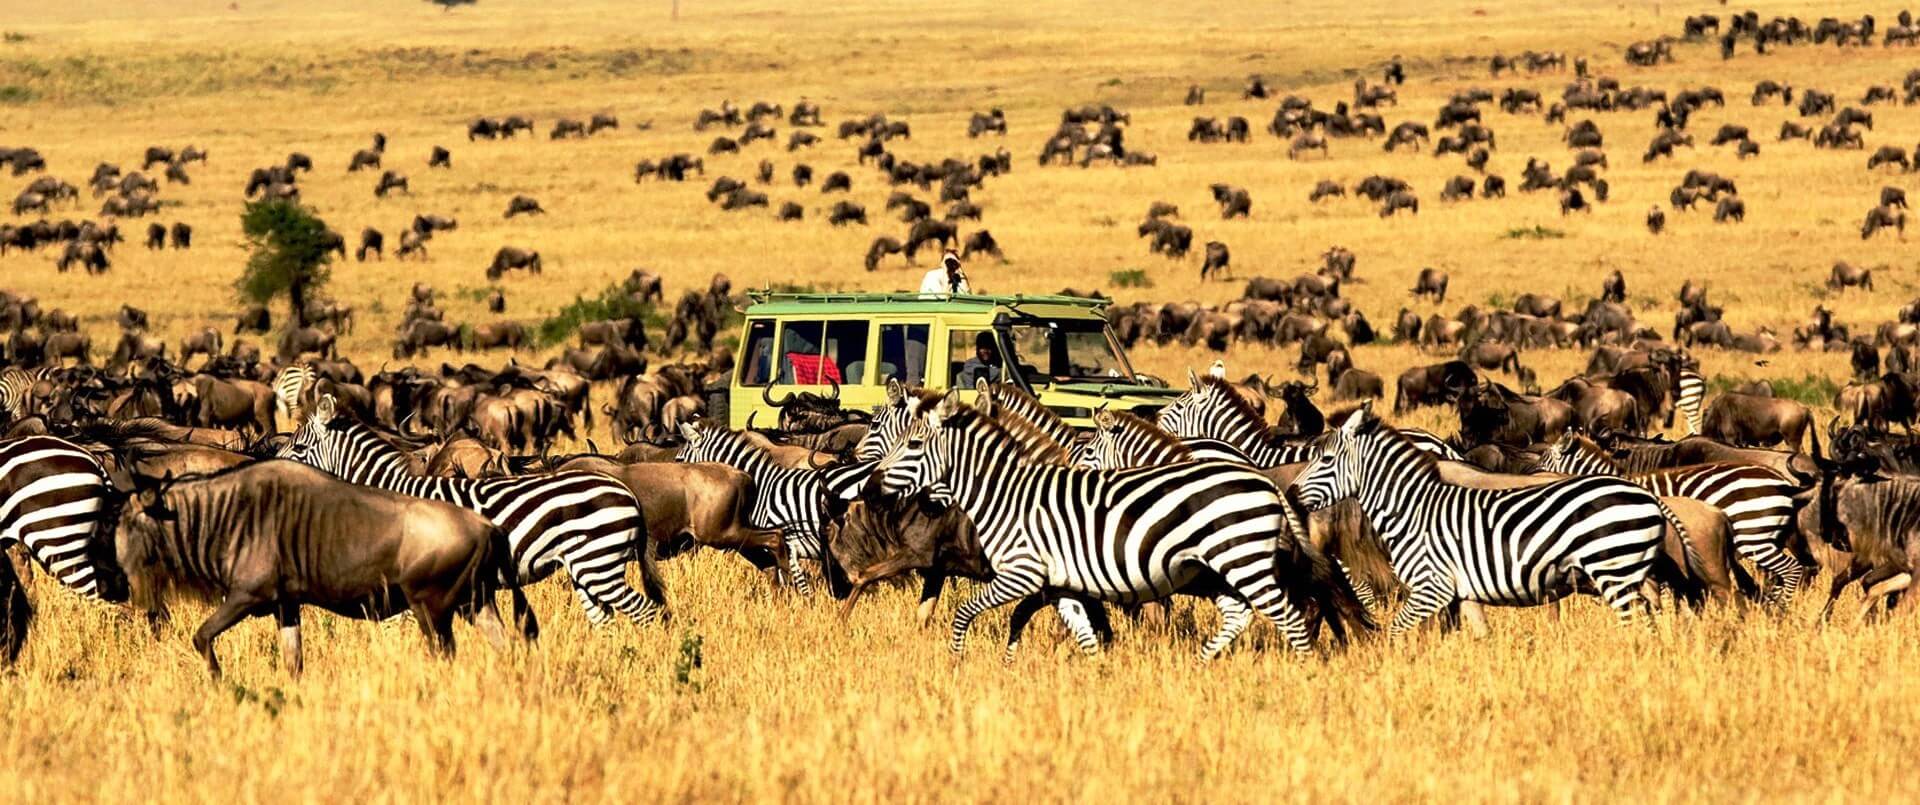 Best Tanzania Tours and Safaris